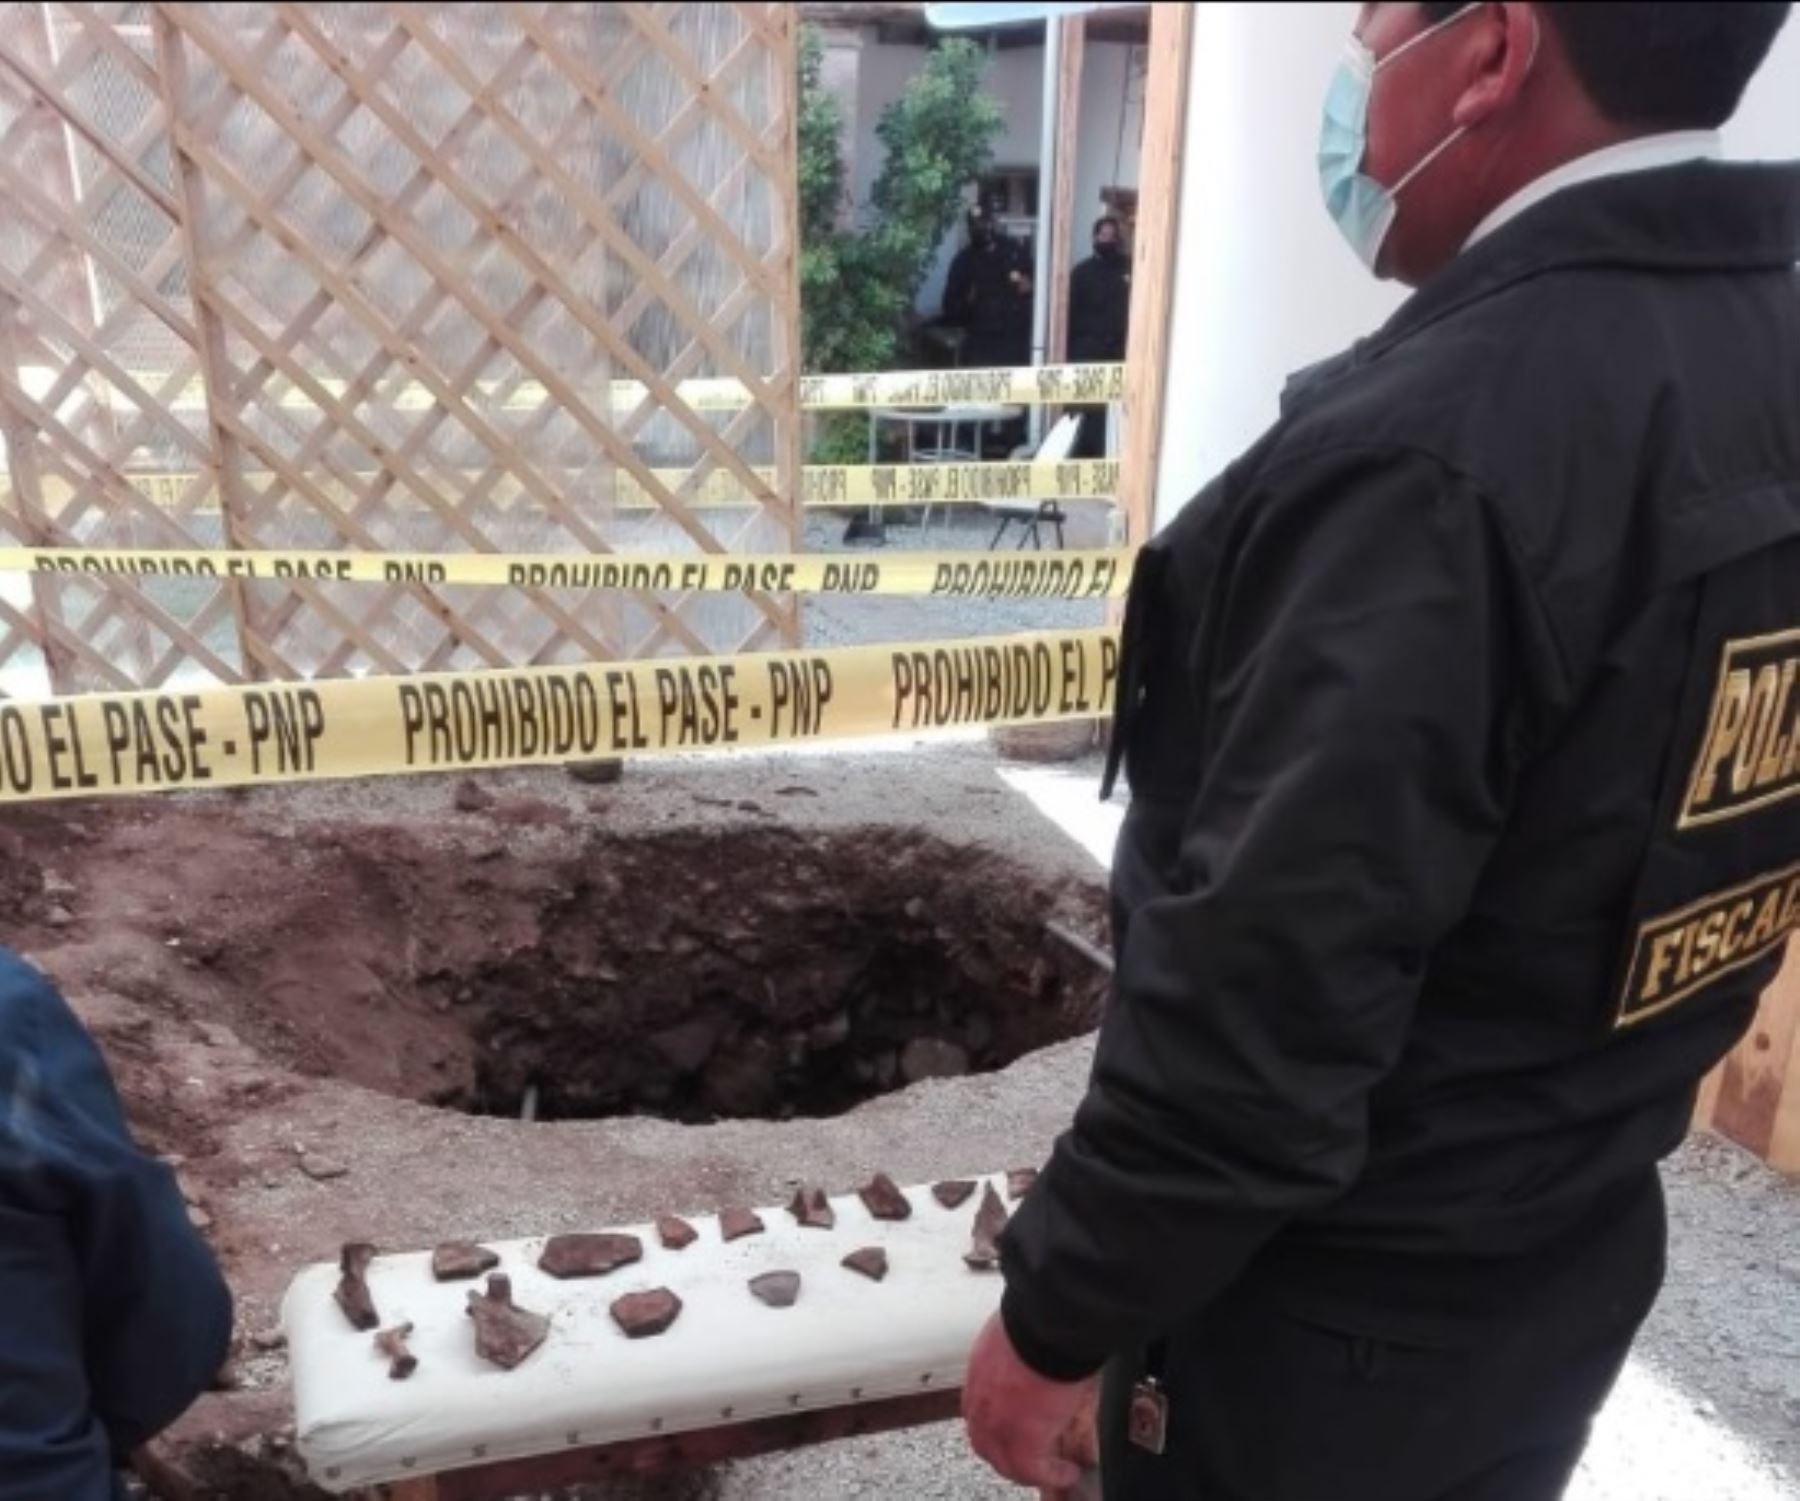 Trece personas, entre varones y mujeres, fueron detenidos por agentes la Policía Nacional y representantes de la Fiscalía de Prevención del Delito por retirar objetos arqueológicos y restos óseos del patio tras realizar un forado en una casona ubicada en el centro histórico de la ciudad de Cusco.